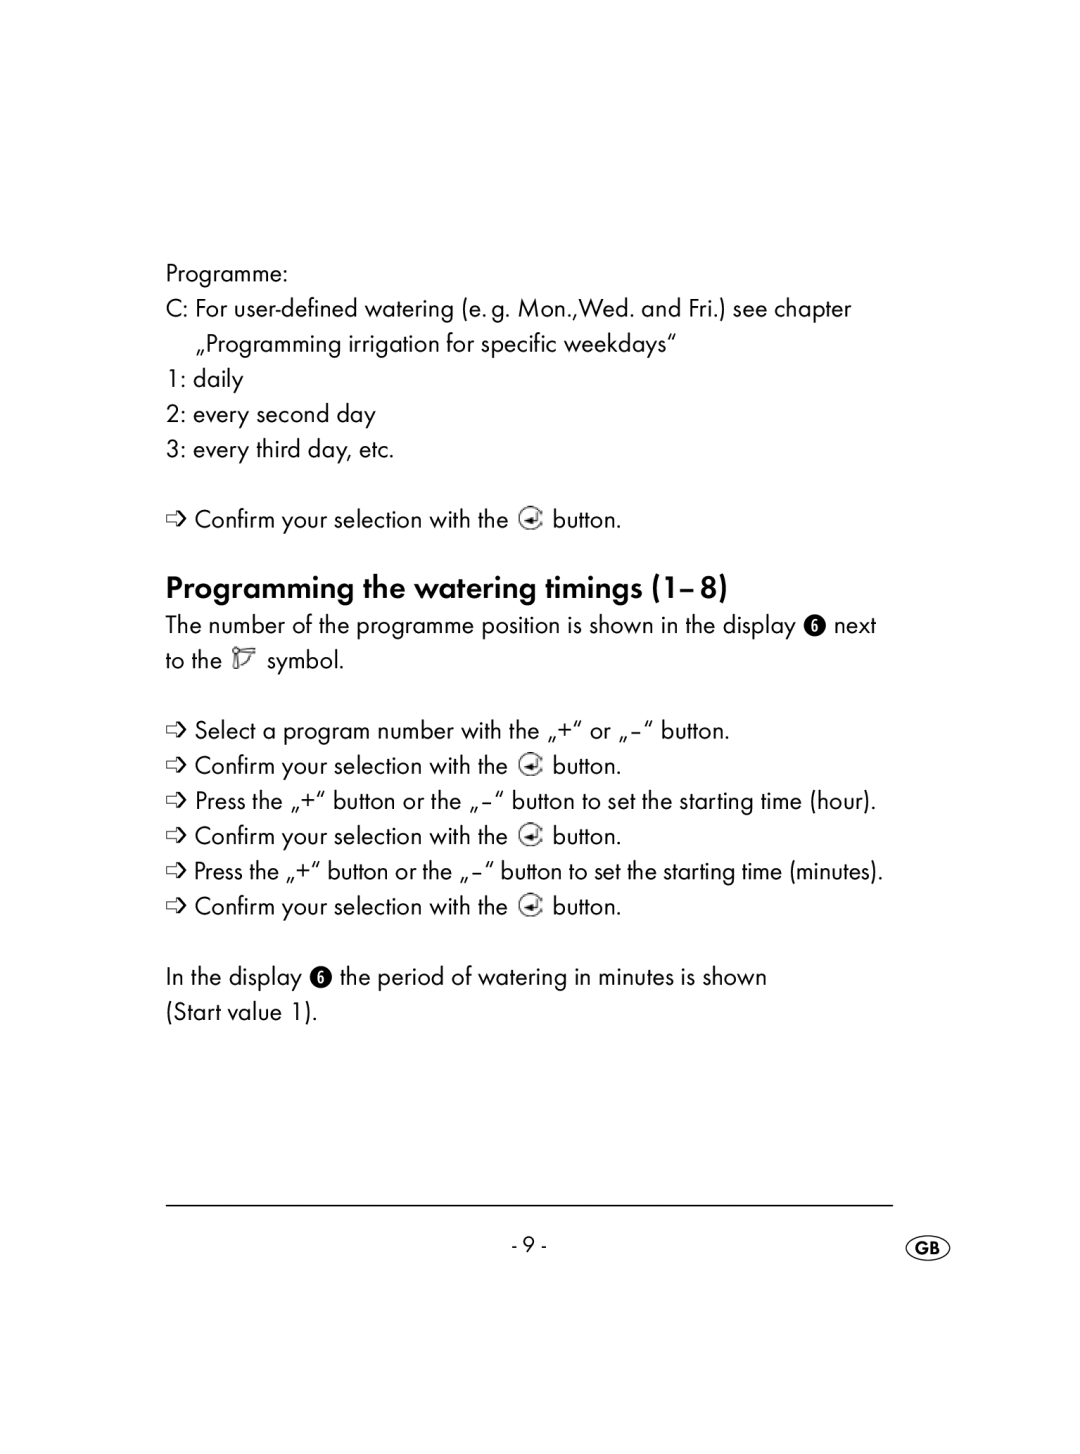 Kompernass KH 4083 manual Programming the watering timings 